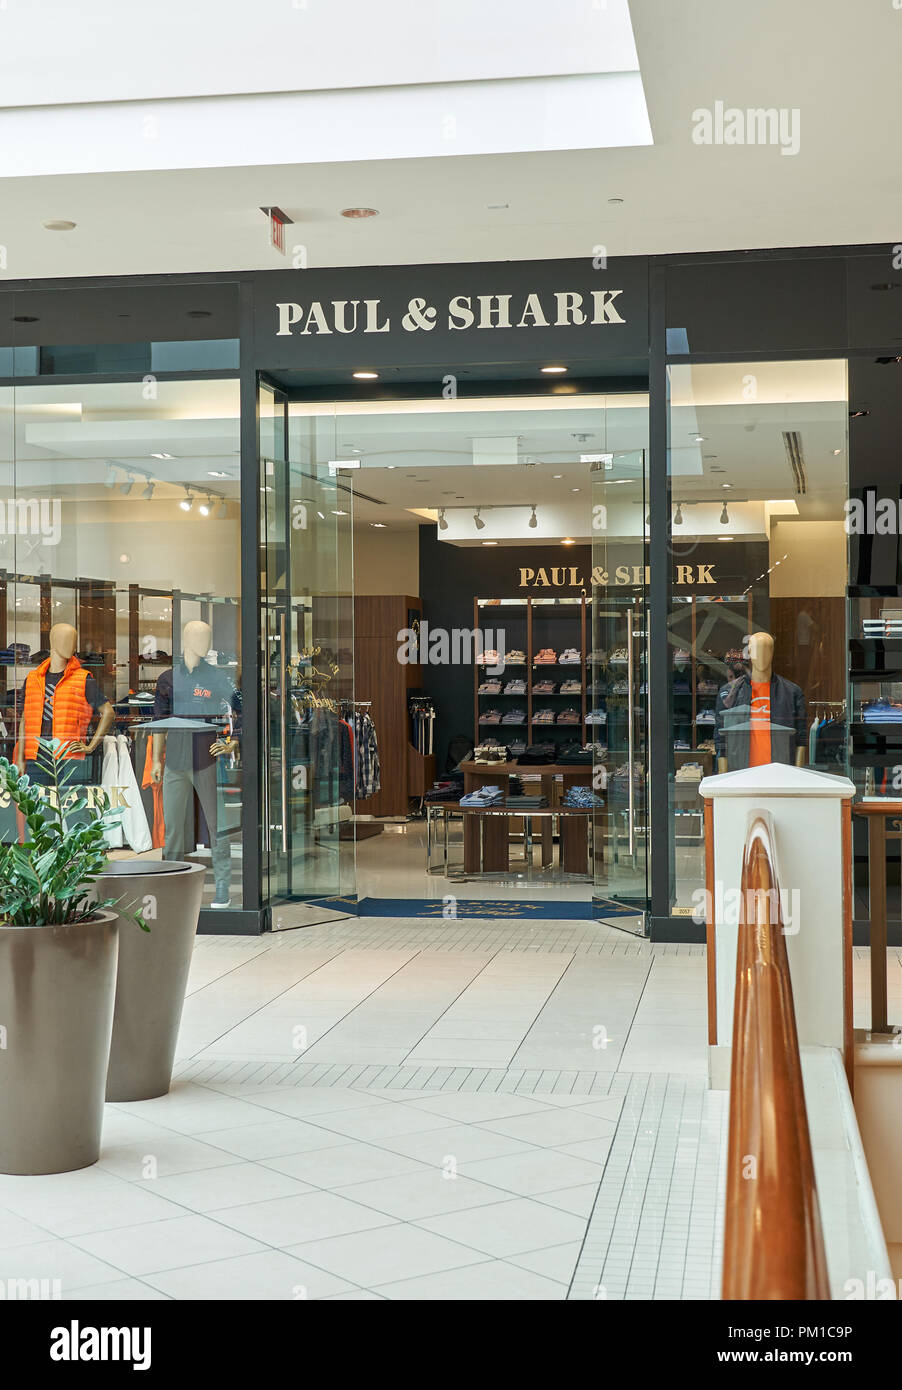 AVENTURA, USA - Agosto 23, 2018: la famosa boutique en el Aventura Mall.  Pablo y tiburón es una marca de ropa italiana fundada por Paolo Dini  Fotografía de stock - Alamy